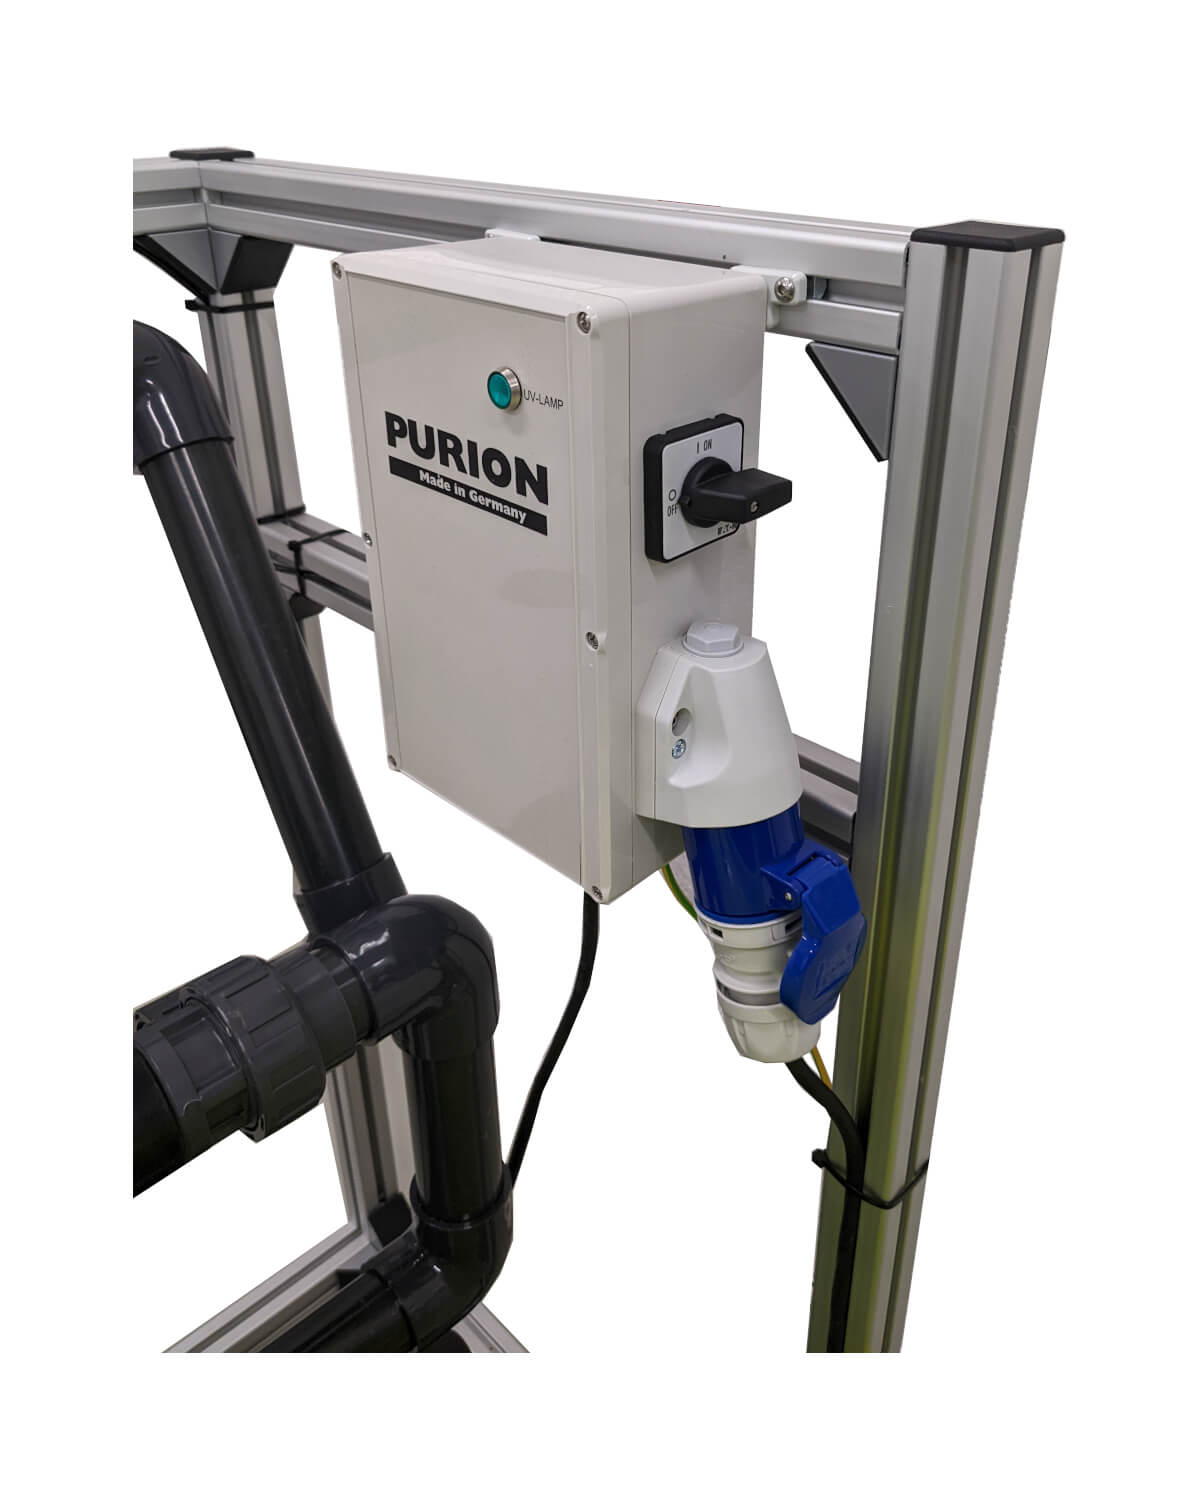 Eine PURION Pool Premium Maschine mit angeschlossenem Schlauch, hergestellt von der UV Concept GmbH.